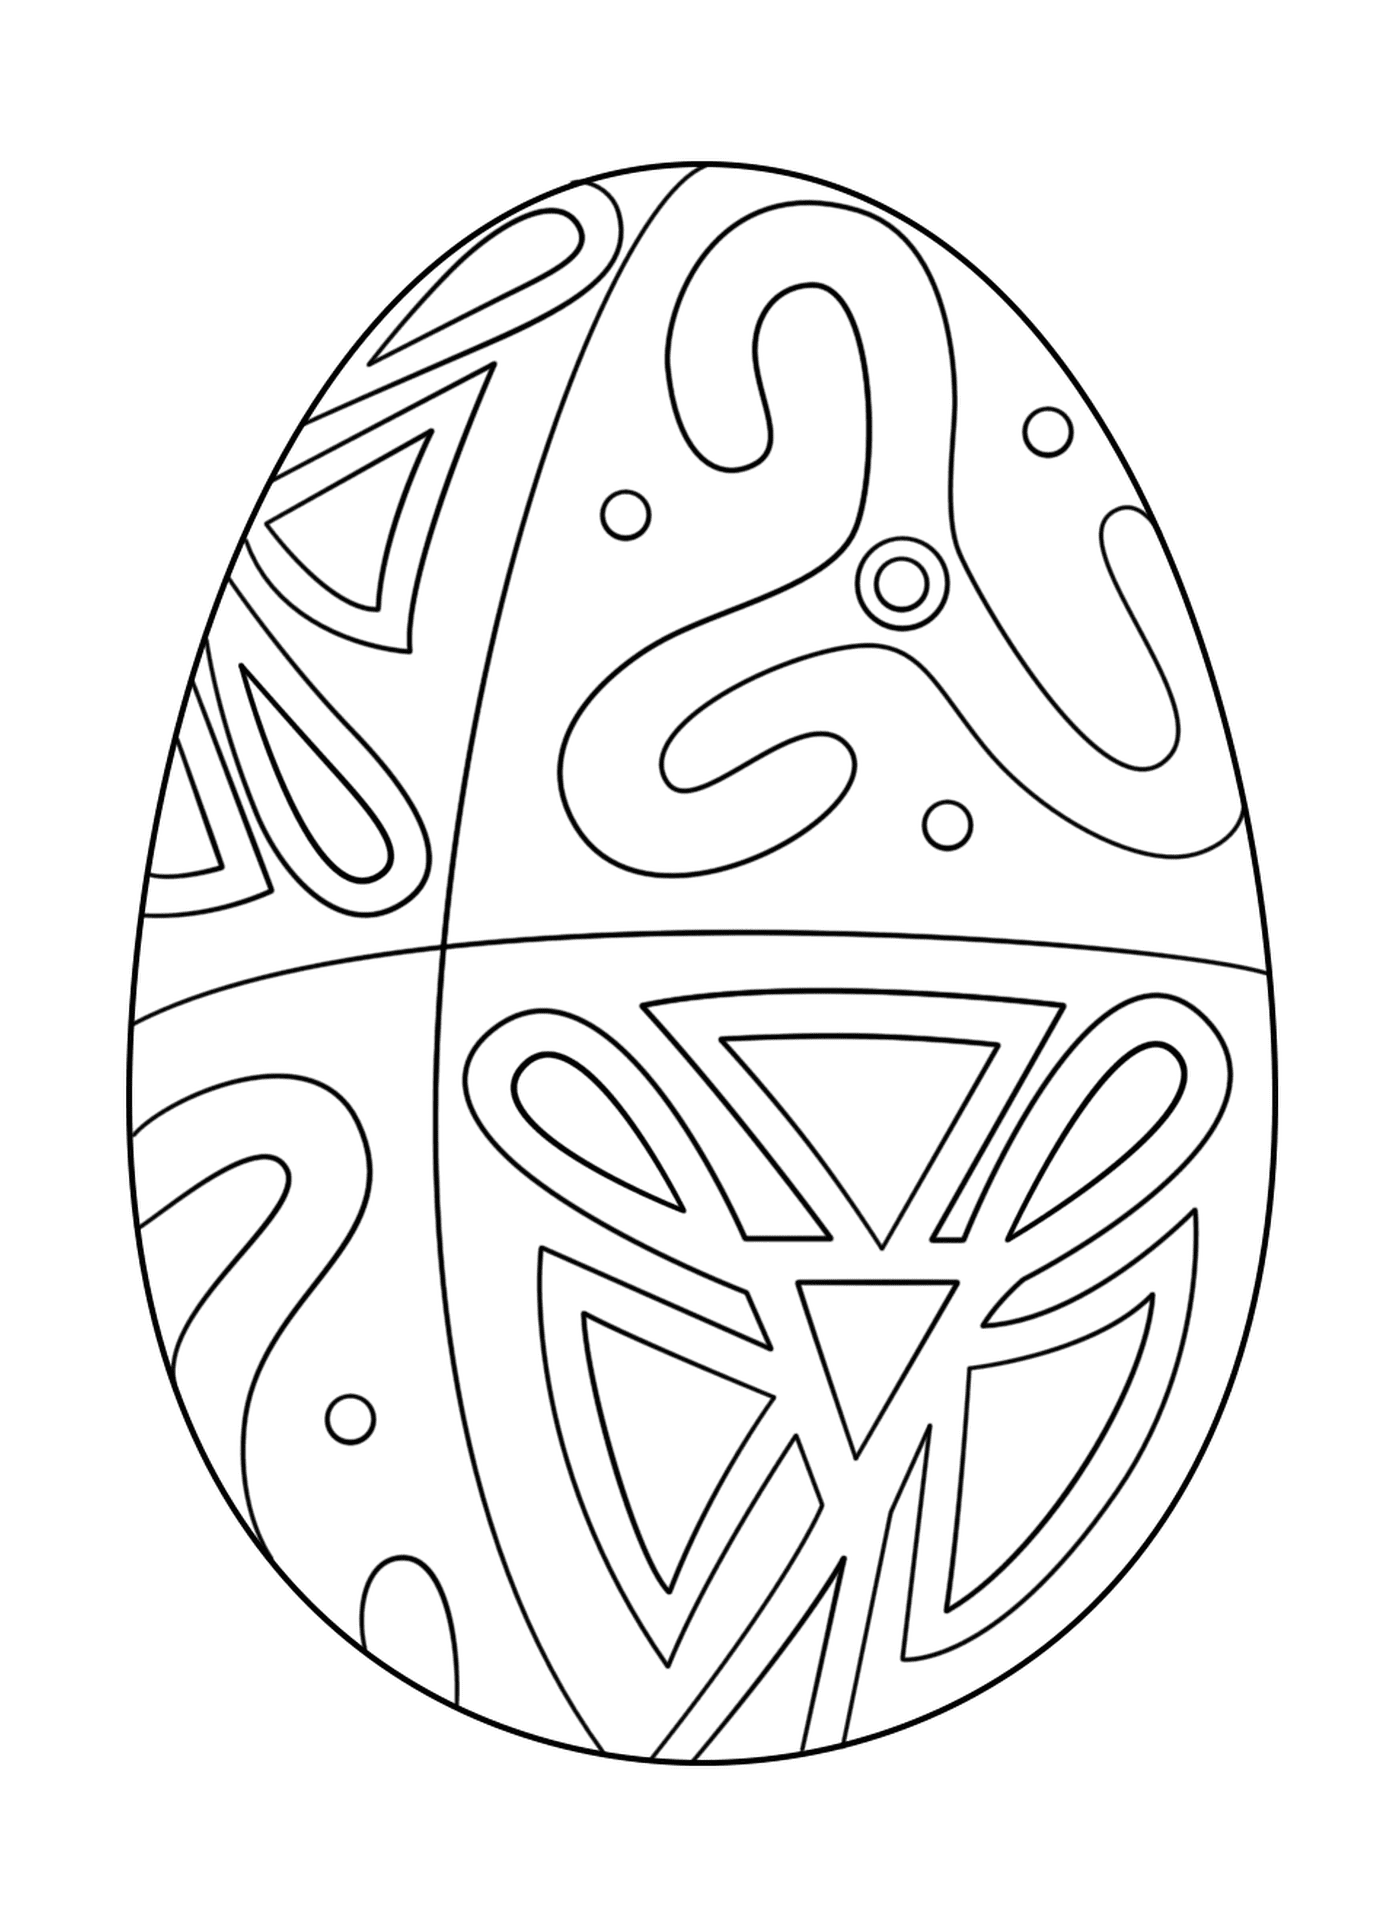  Пасхальное яйцо с народным мотивом 